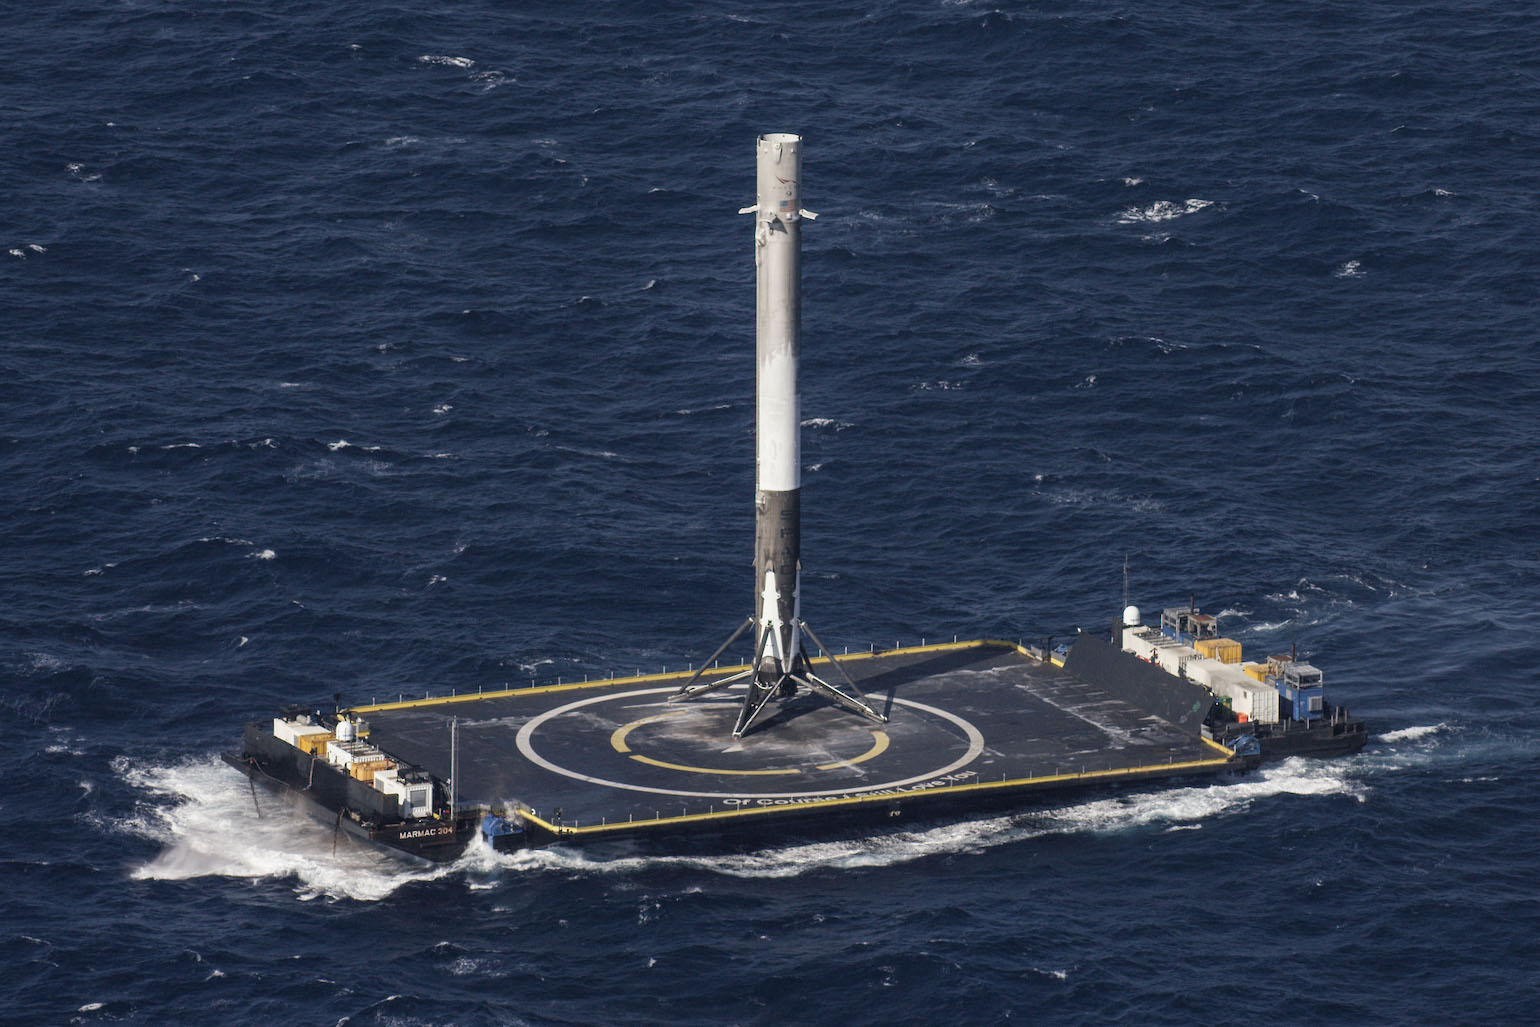 Falcon 9, on a boat